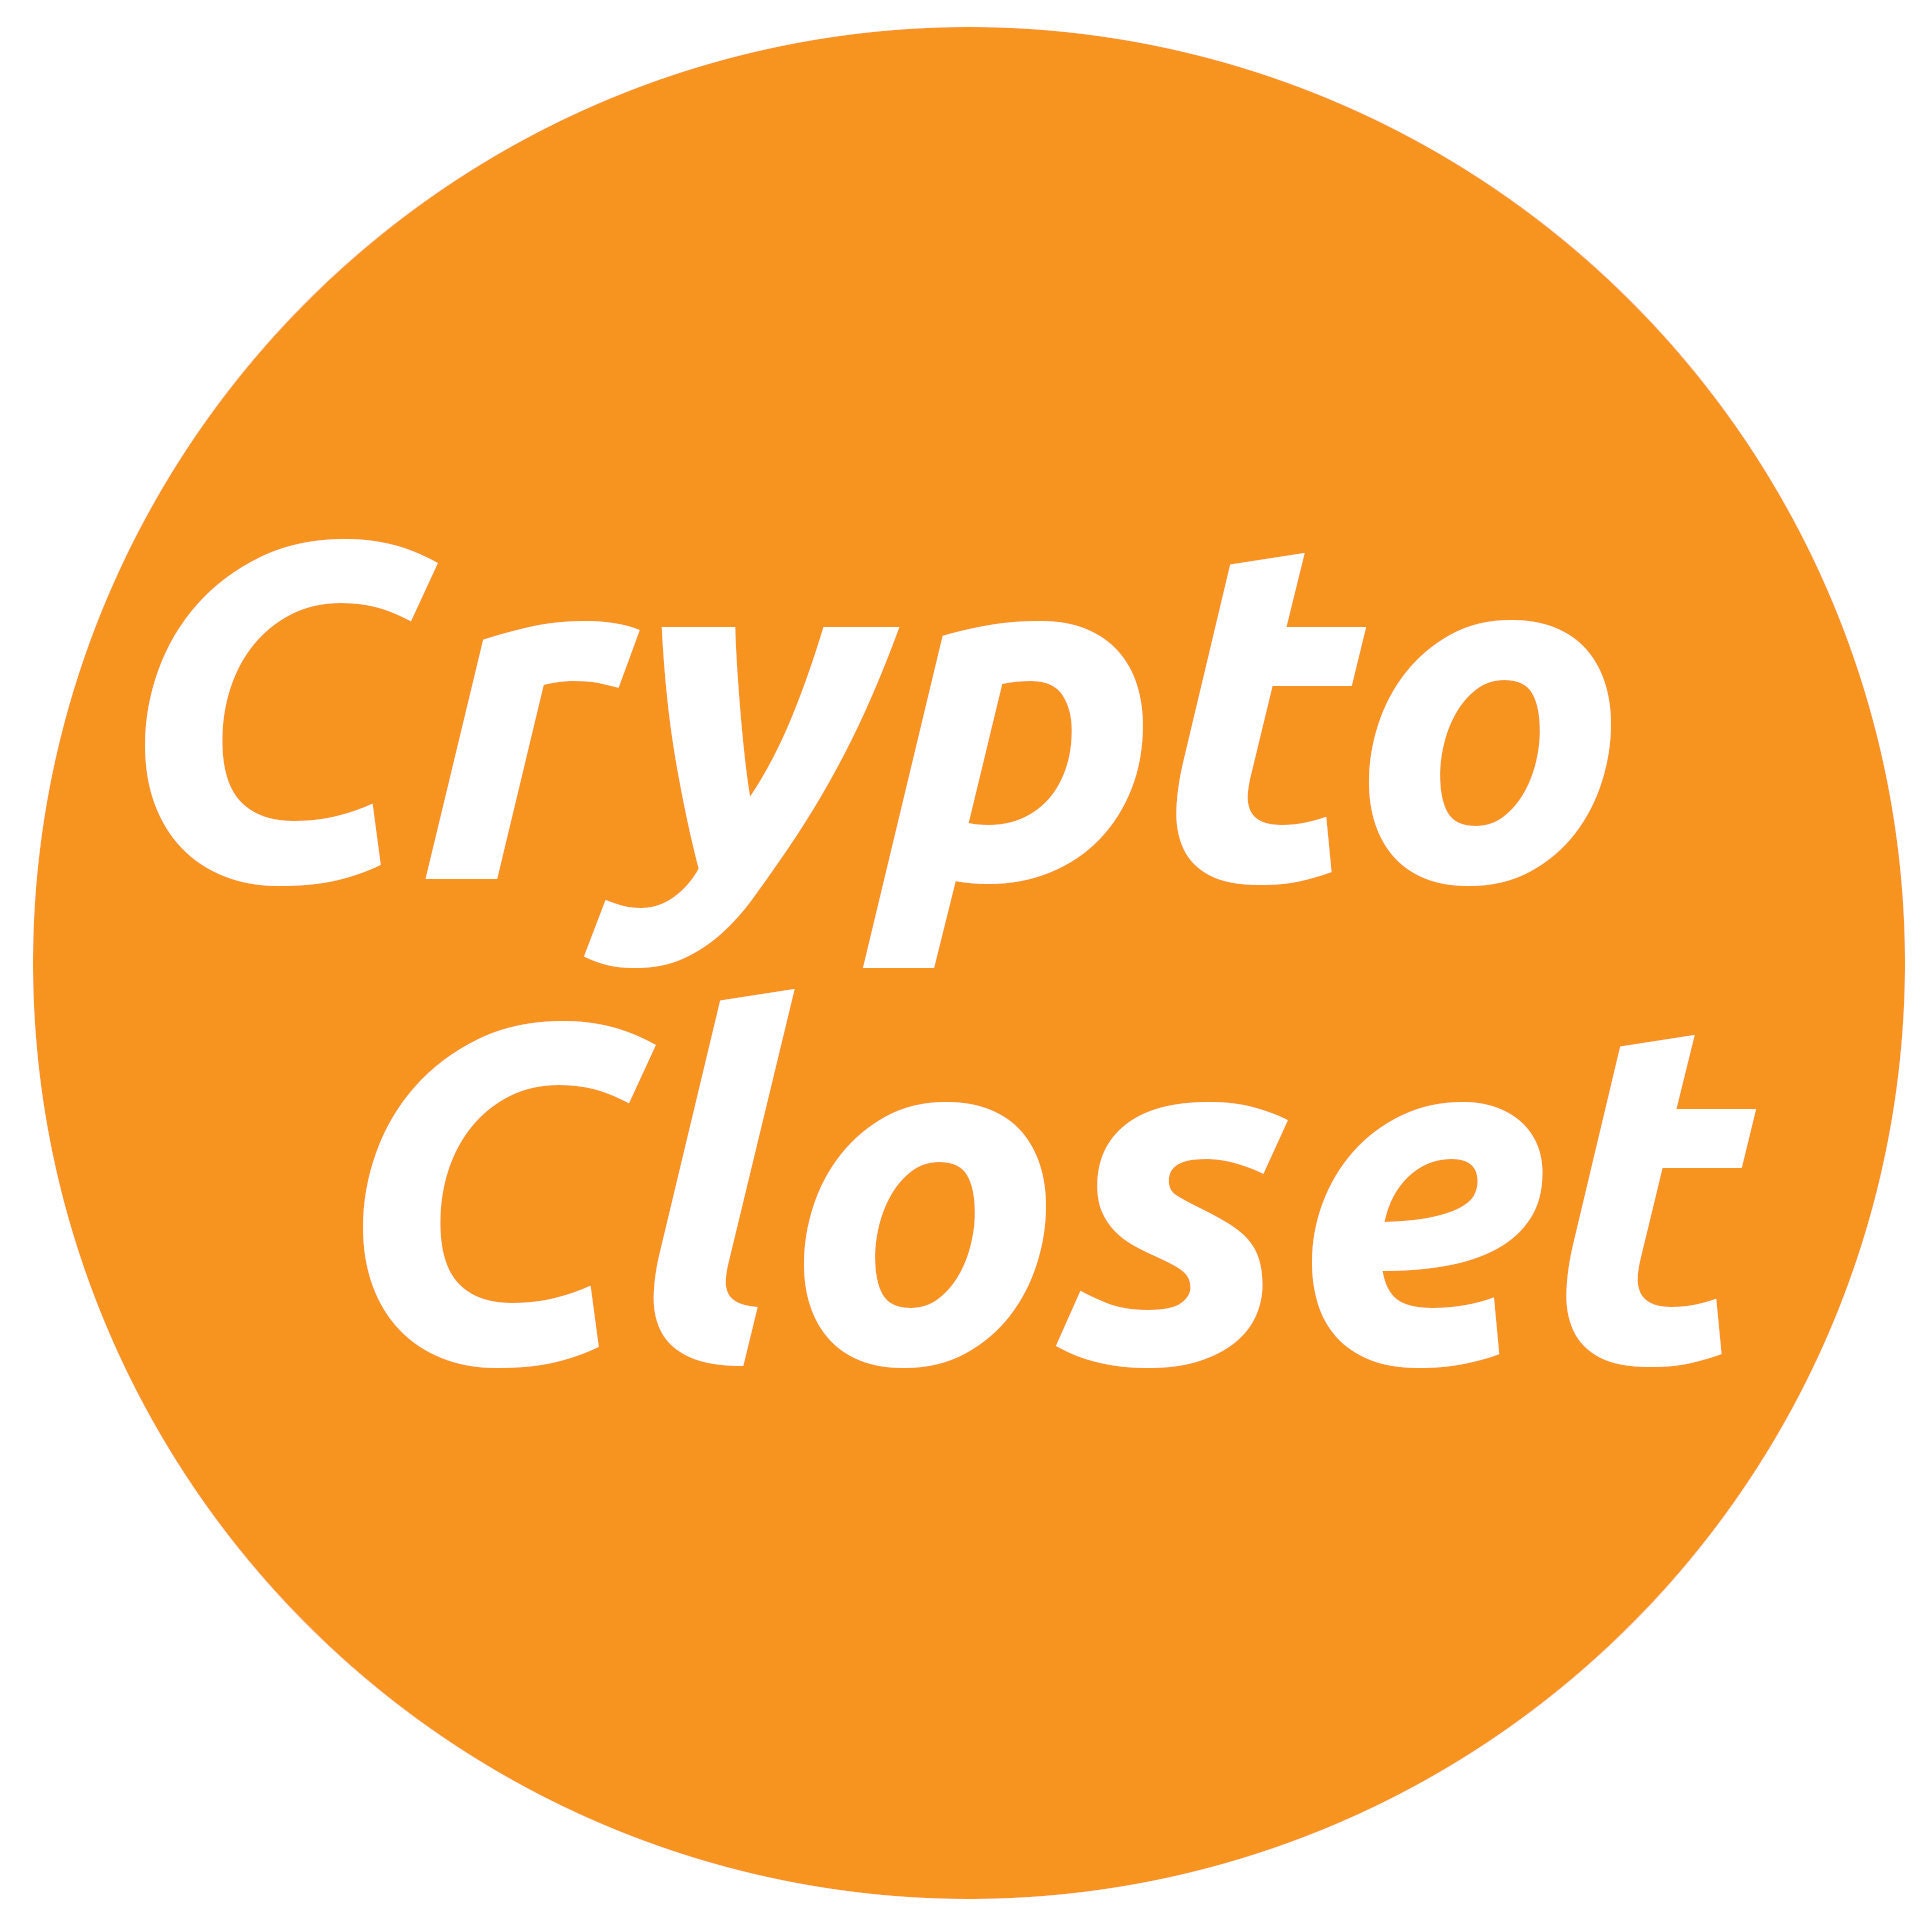 Criptomoneda comprobar patrón mochila crypto bolsa Bitcoin 